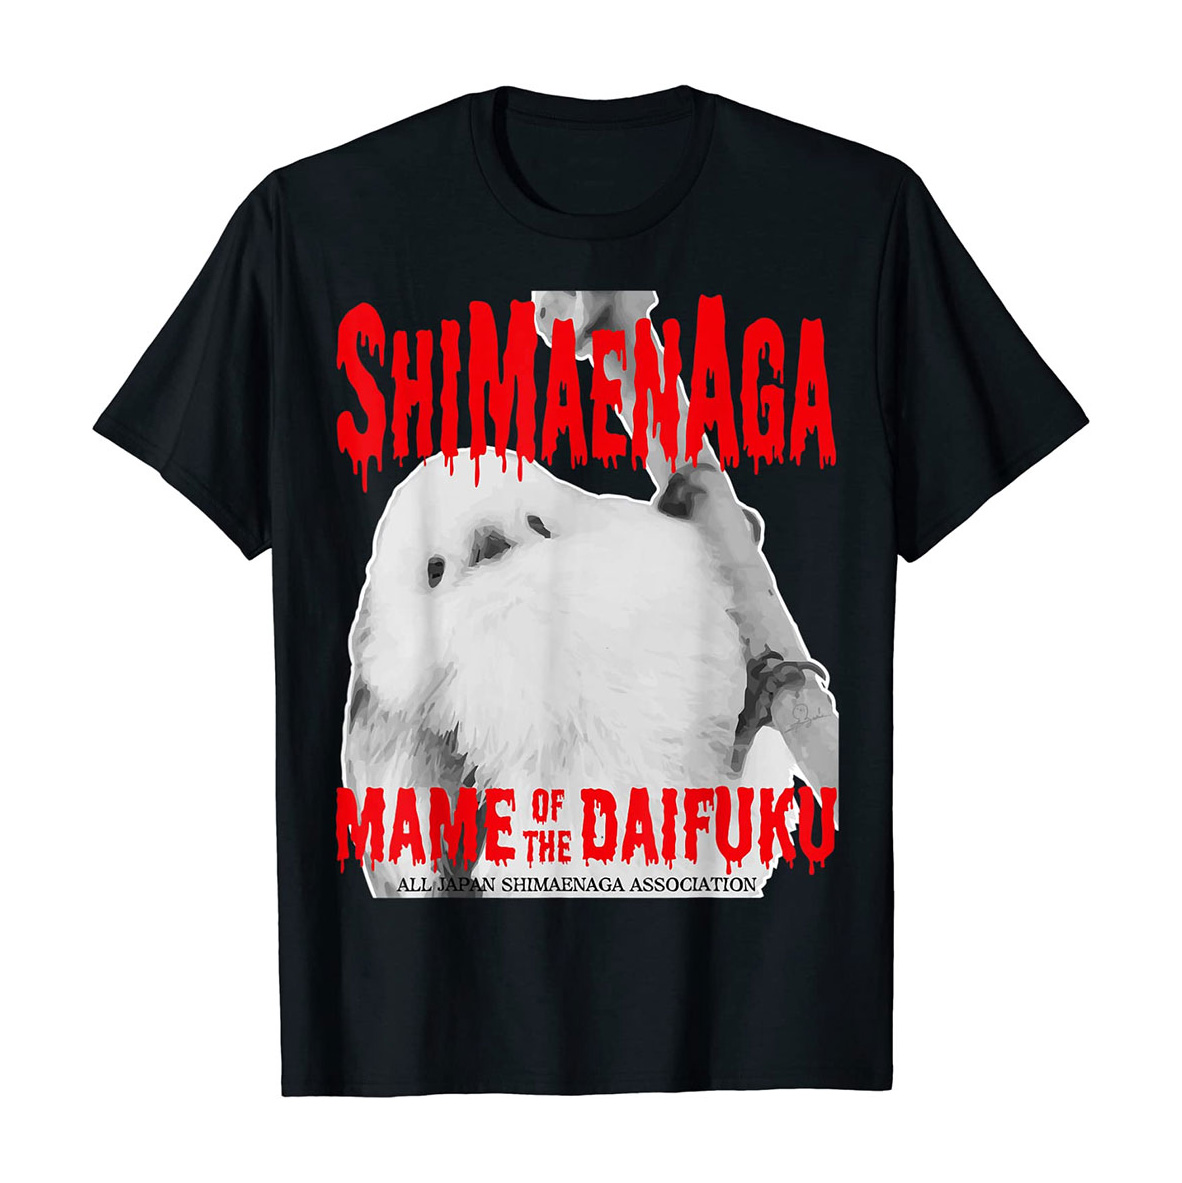 ＼シマエナガTシャツが当たる‼／

SHIMAENAGA MAME OF THE DAIFUKU Tシャツ
👕 amzn.to/3URWiLG

5名様にプレゼント🎁

応募方法
1⃣@daily_simaenaga をフォロー
2⃣この投稿をRP

応募は5月12日（日）23:59まで
当選者にはDM送付✉